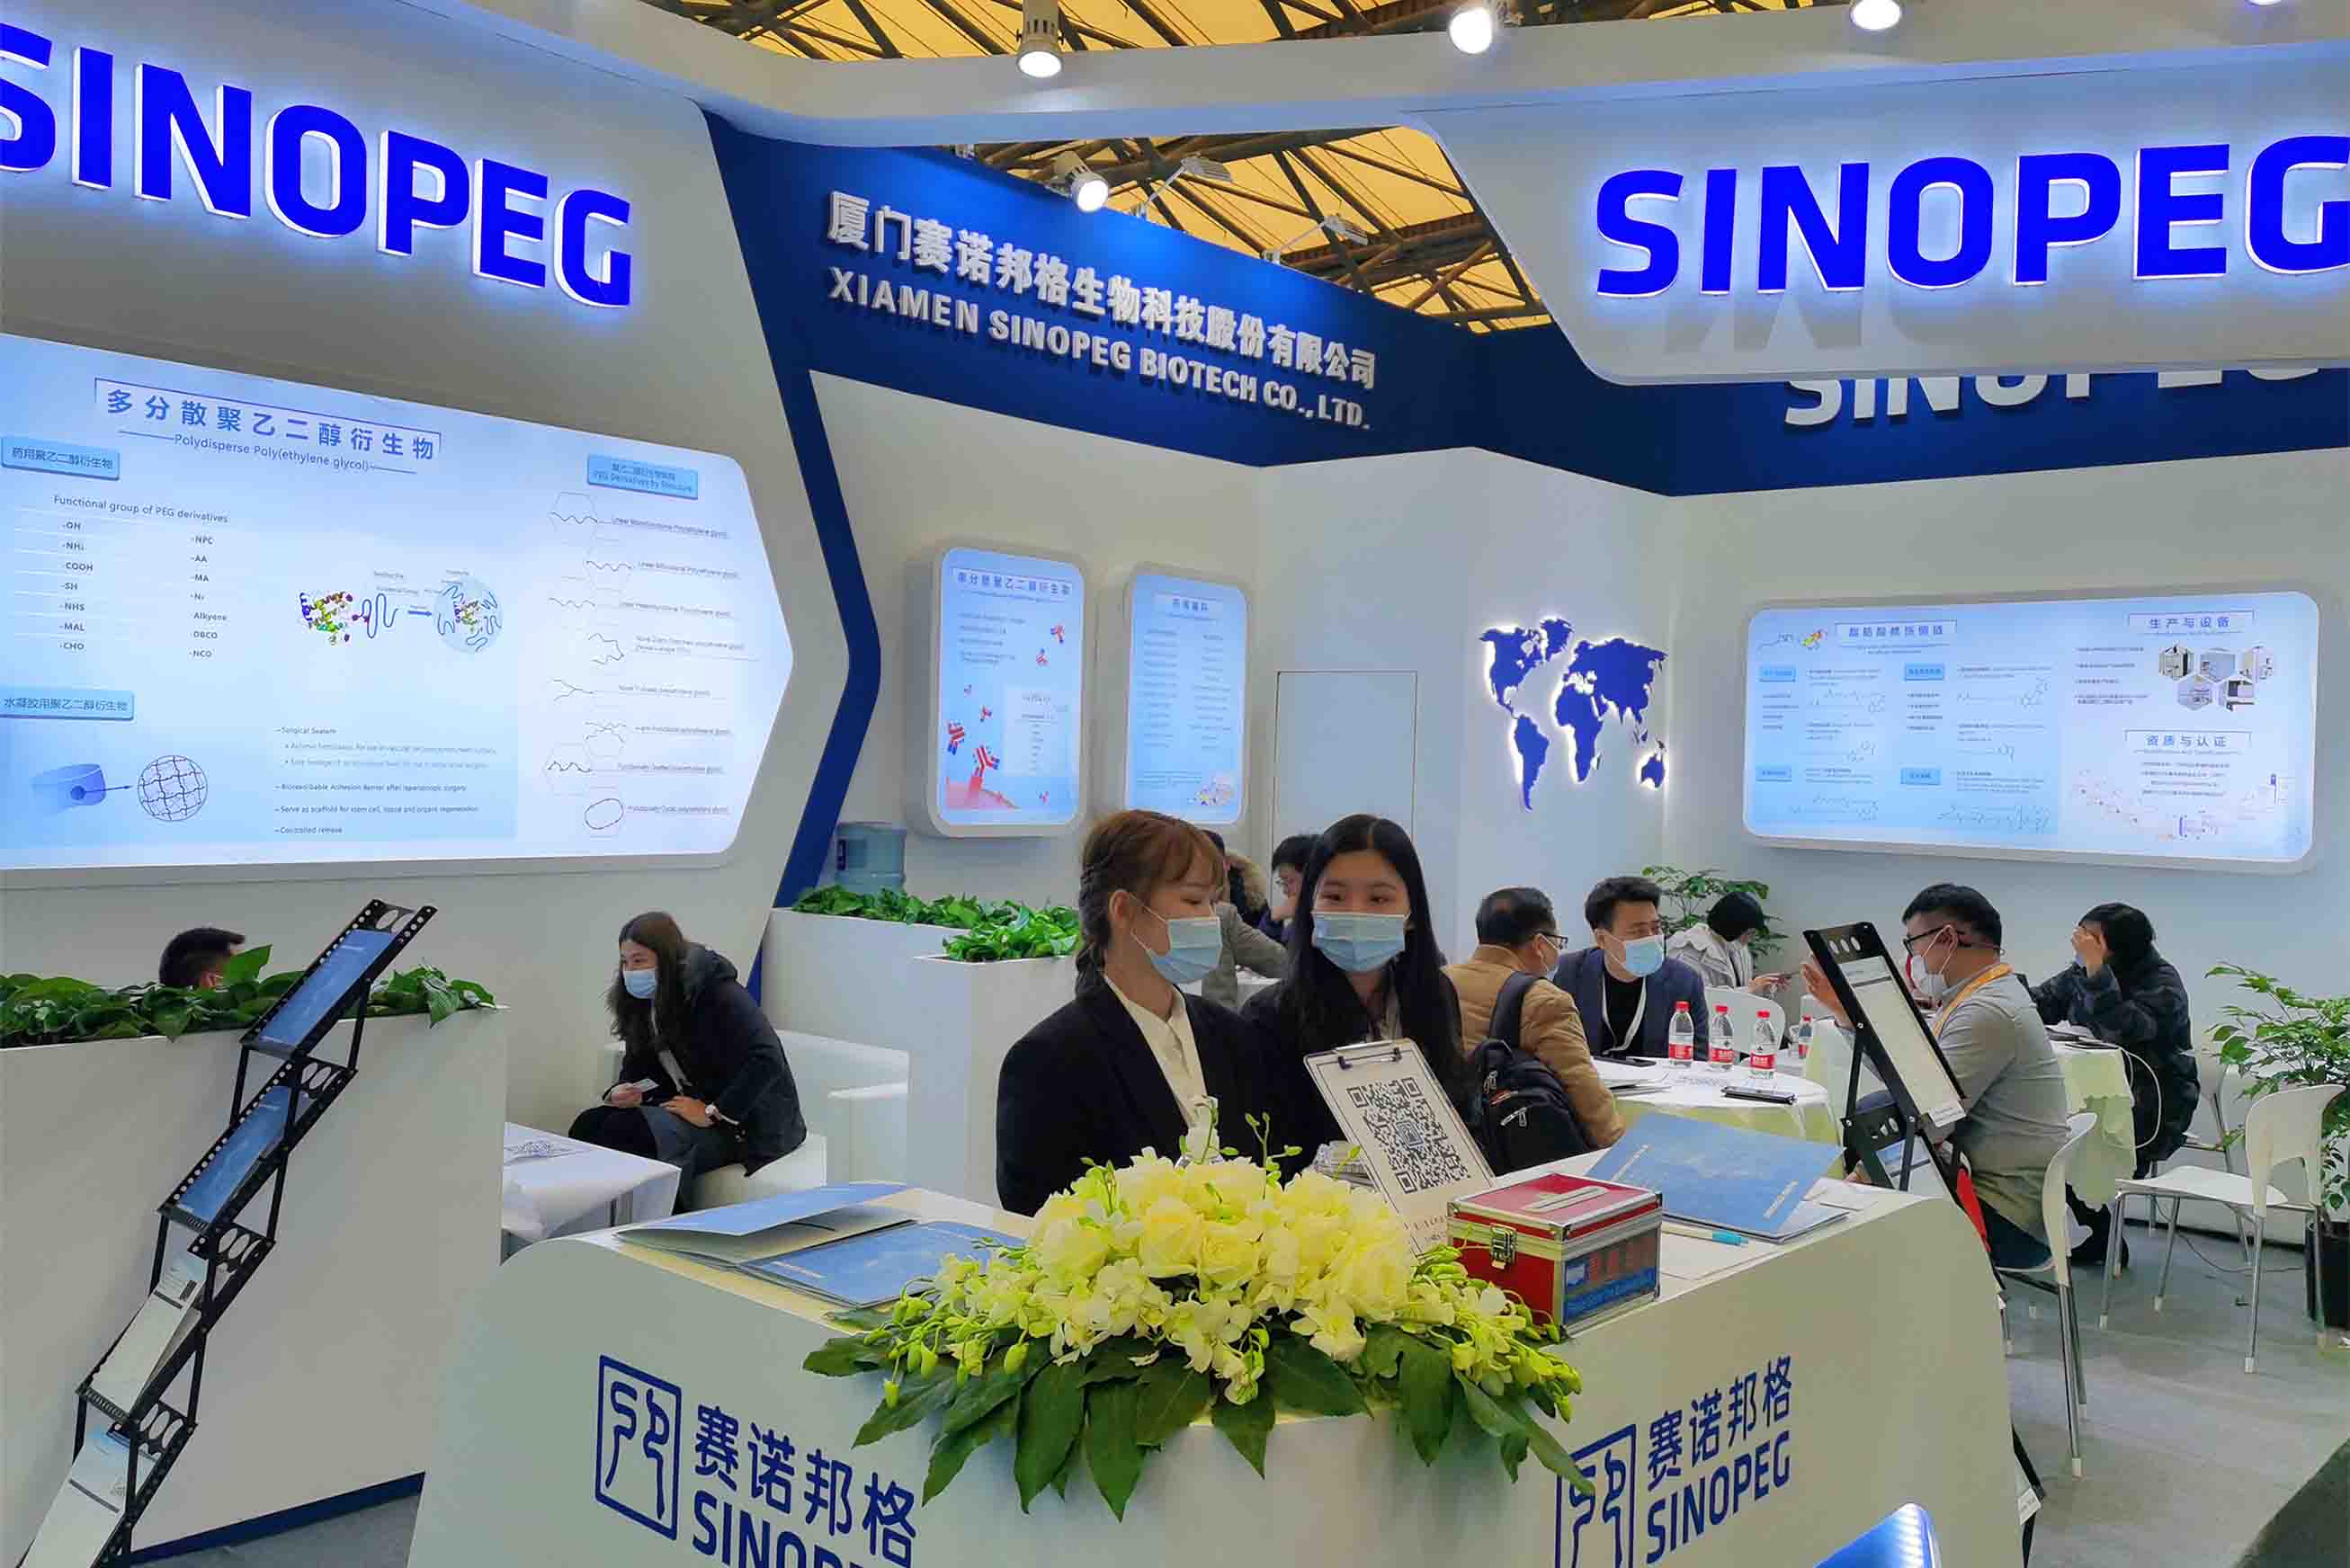  SINOPEG obtuvo logros sustanciales en CPhI china 2020 